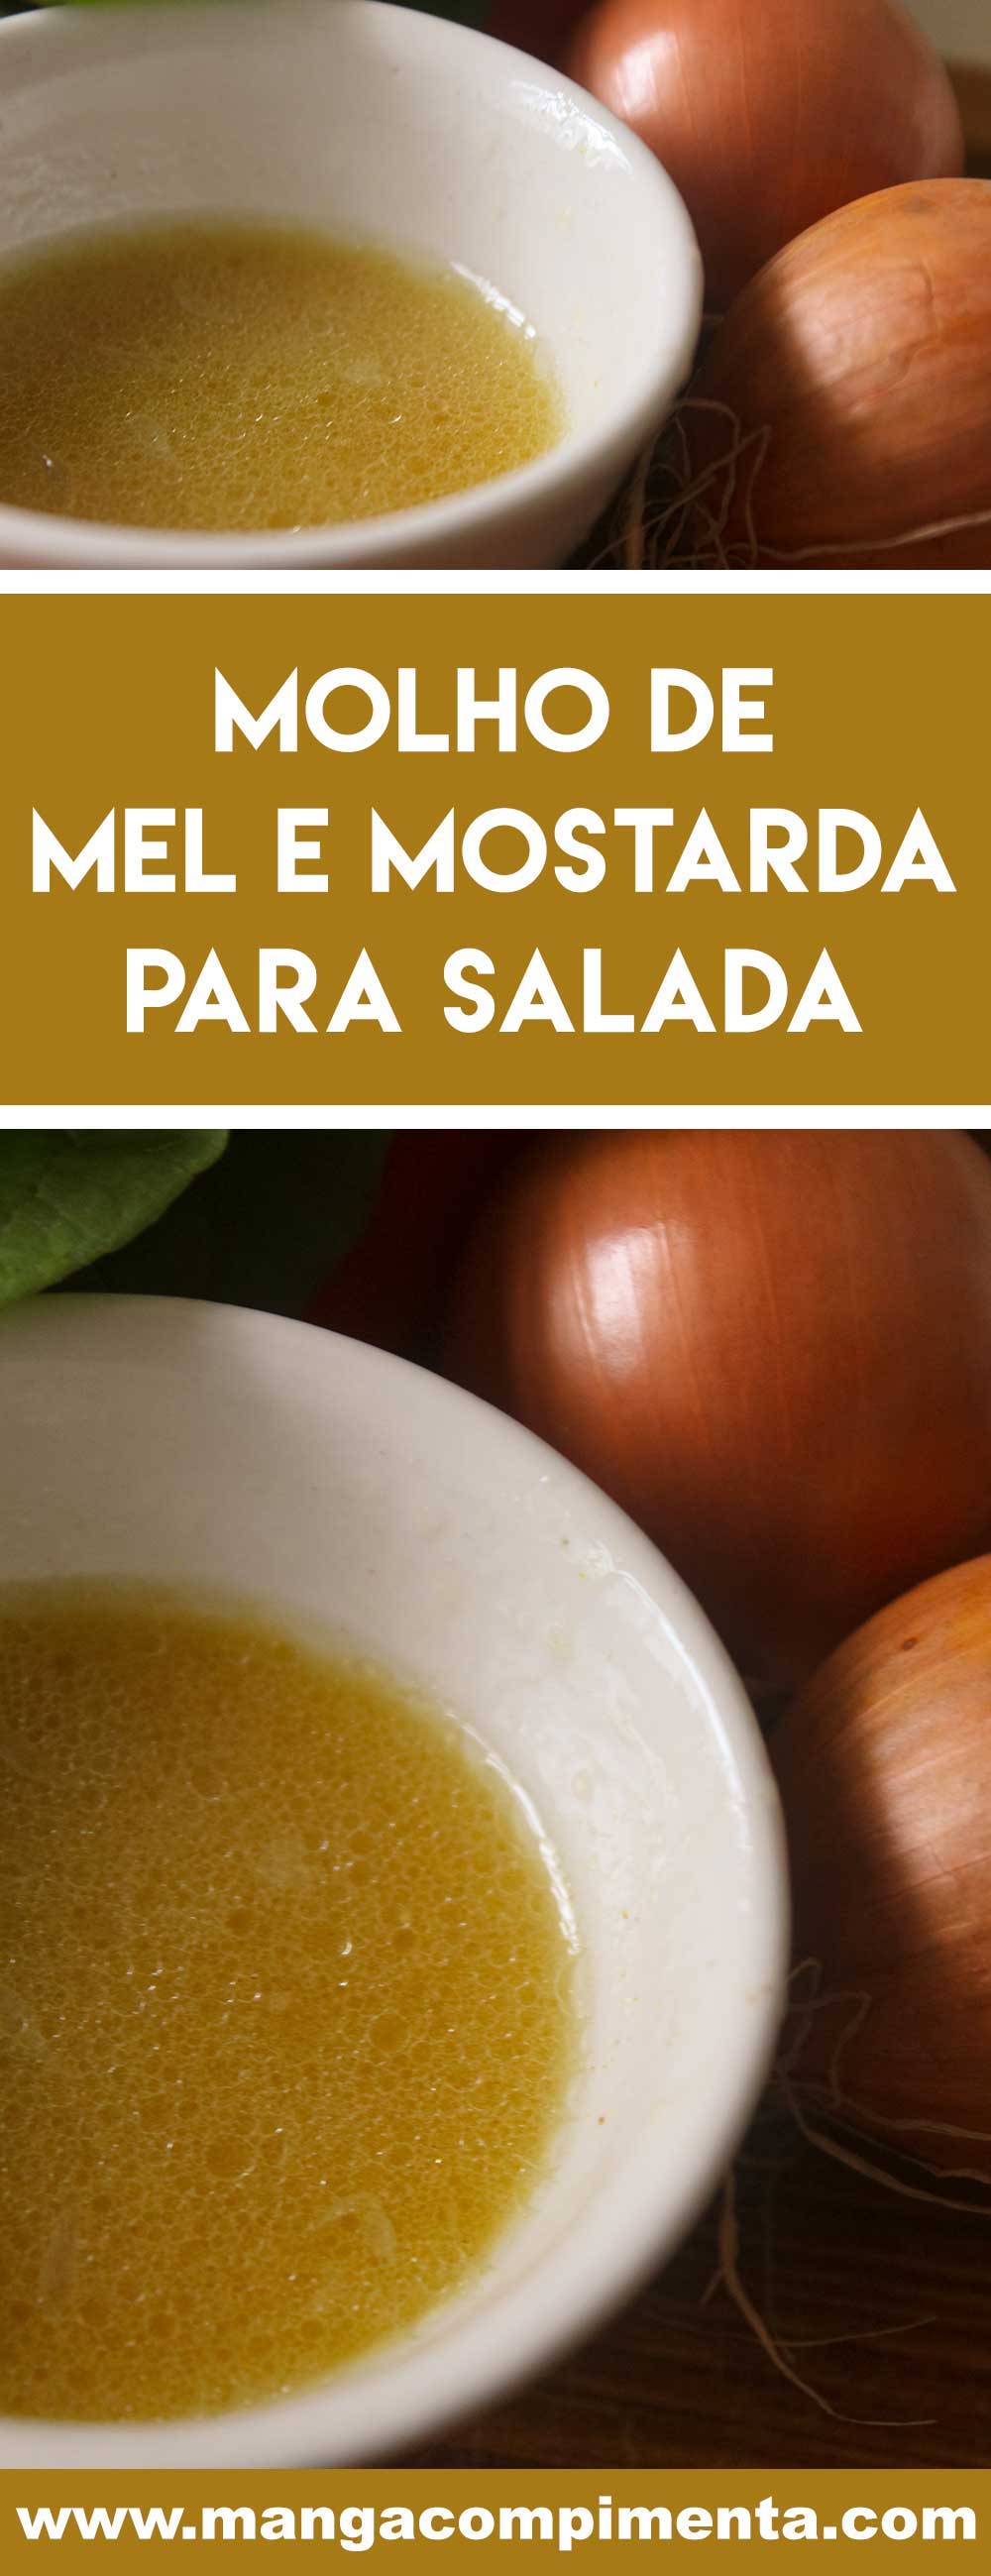 Receita de Molho de Mel e Mostarda para Salada - deixe as folhas de alface mais gostosa com esse tempero caseiro.